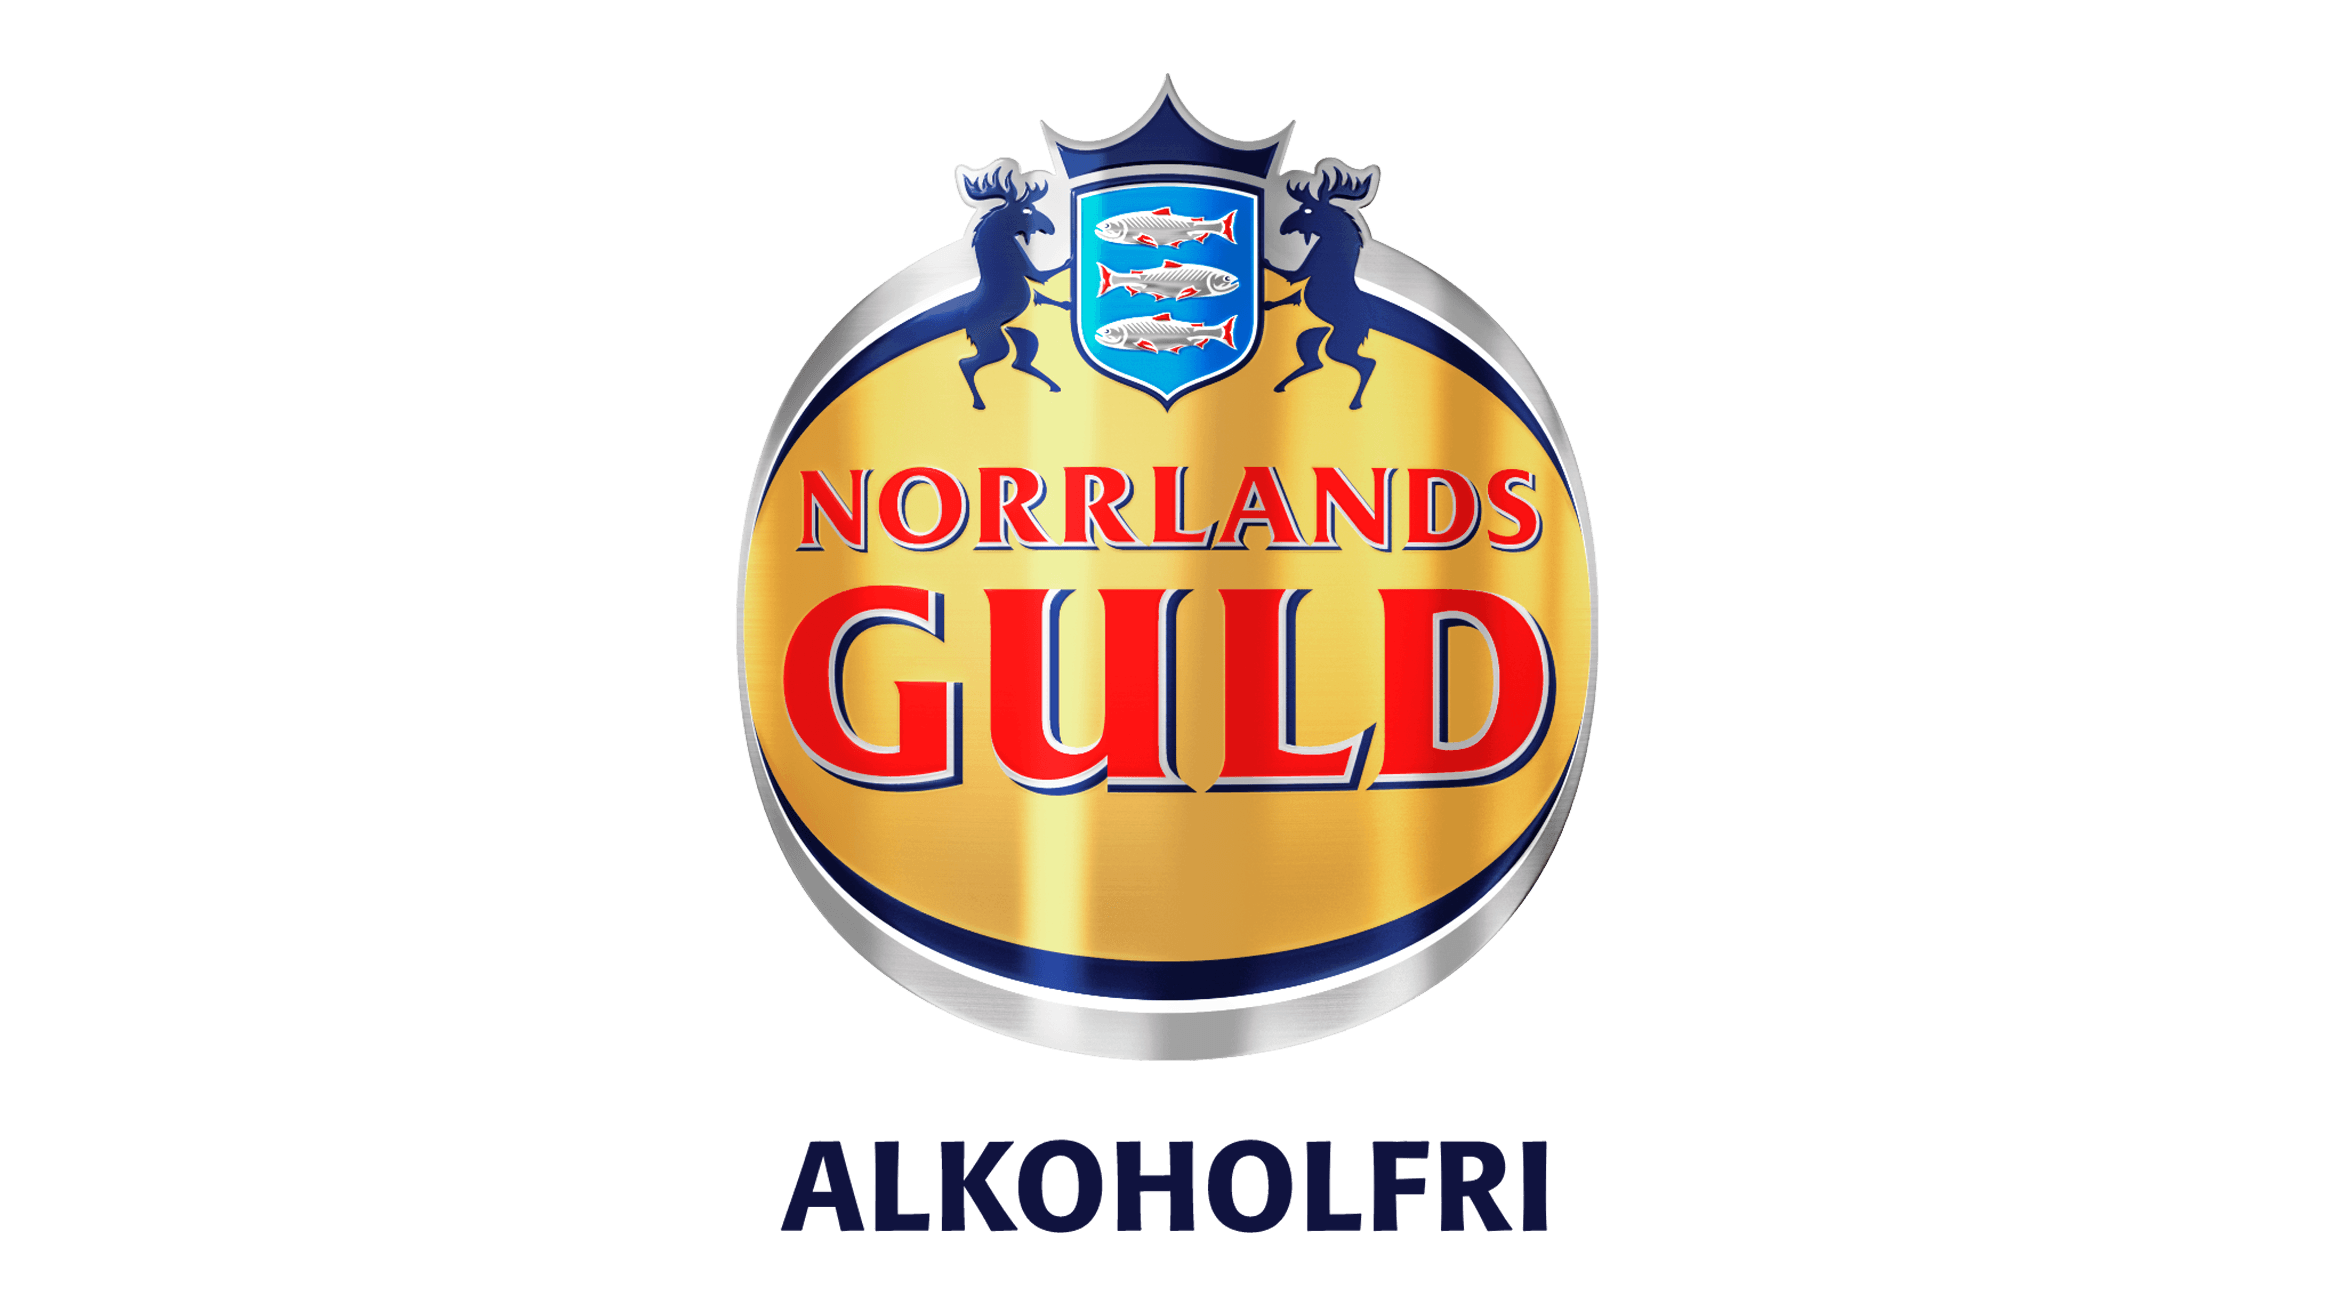 logos_norrlands